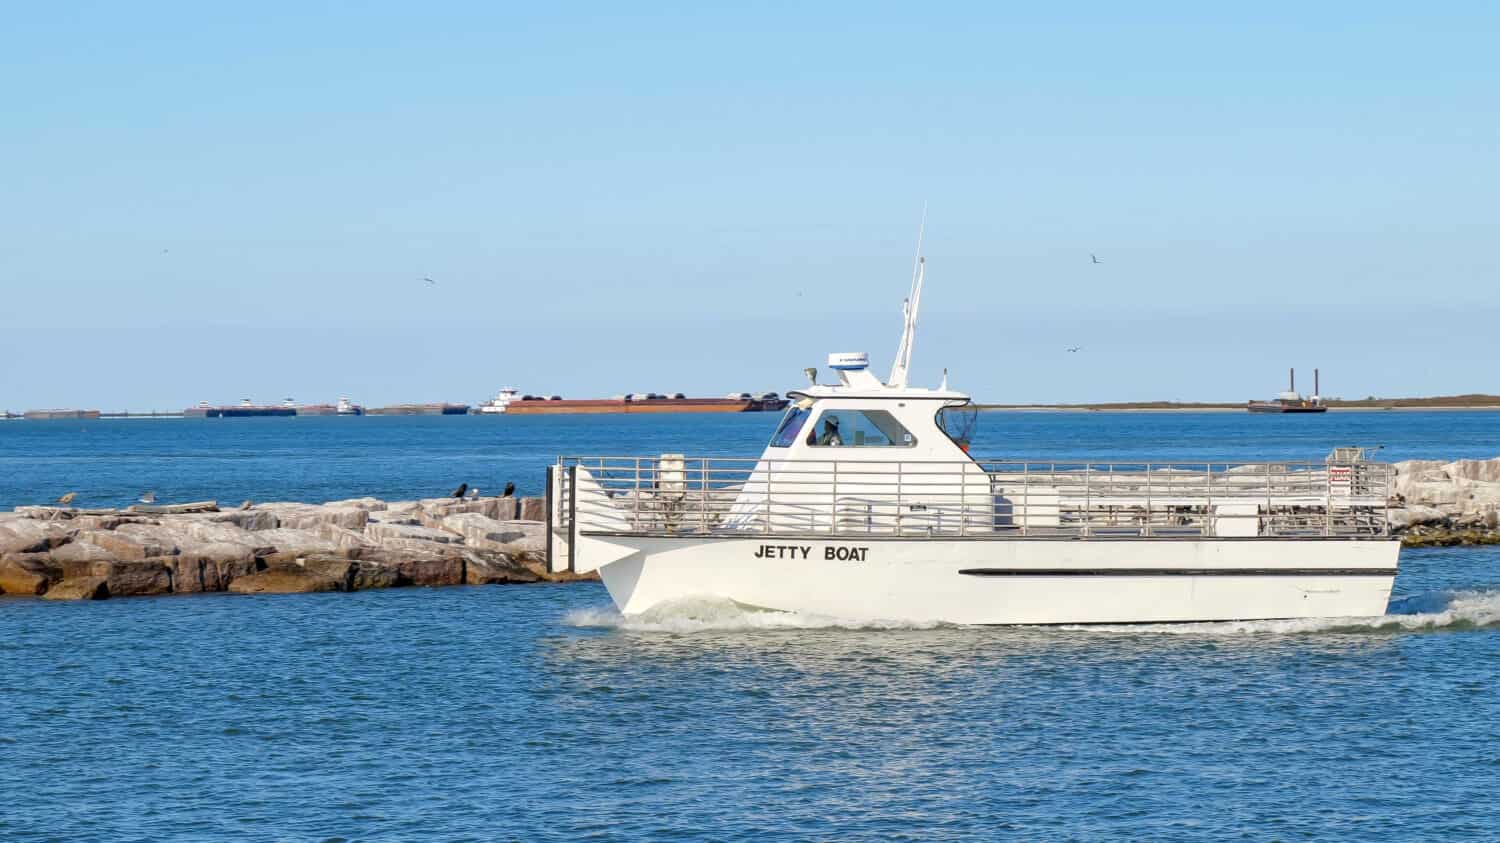 PORT ARANSAS, TX - 27 FEB 2020: La barca del molo lascia l'ingresso del porto turistico in una giornata di sole mentre va a recuperare i passeggeri dall'isola di San Jose.